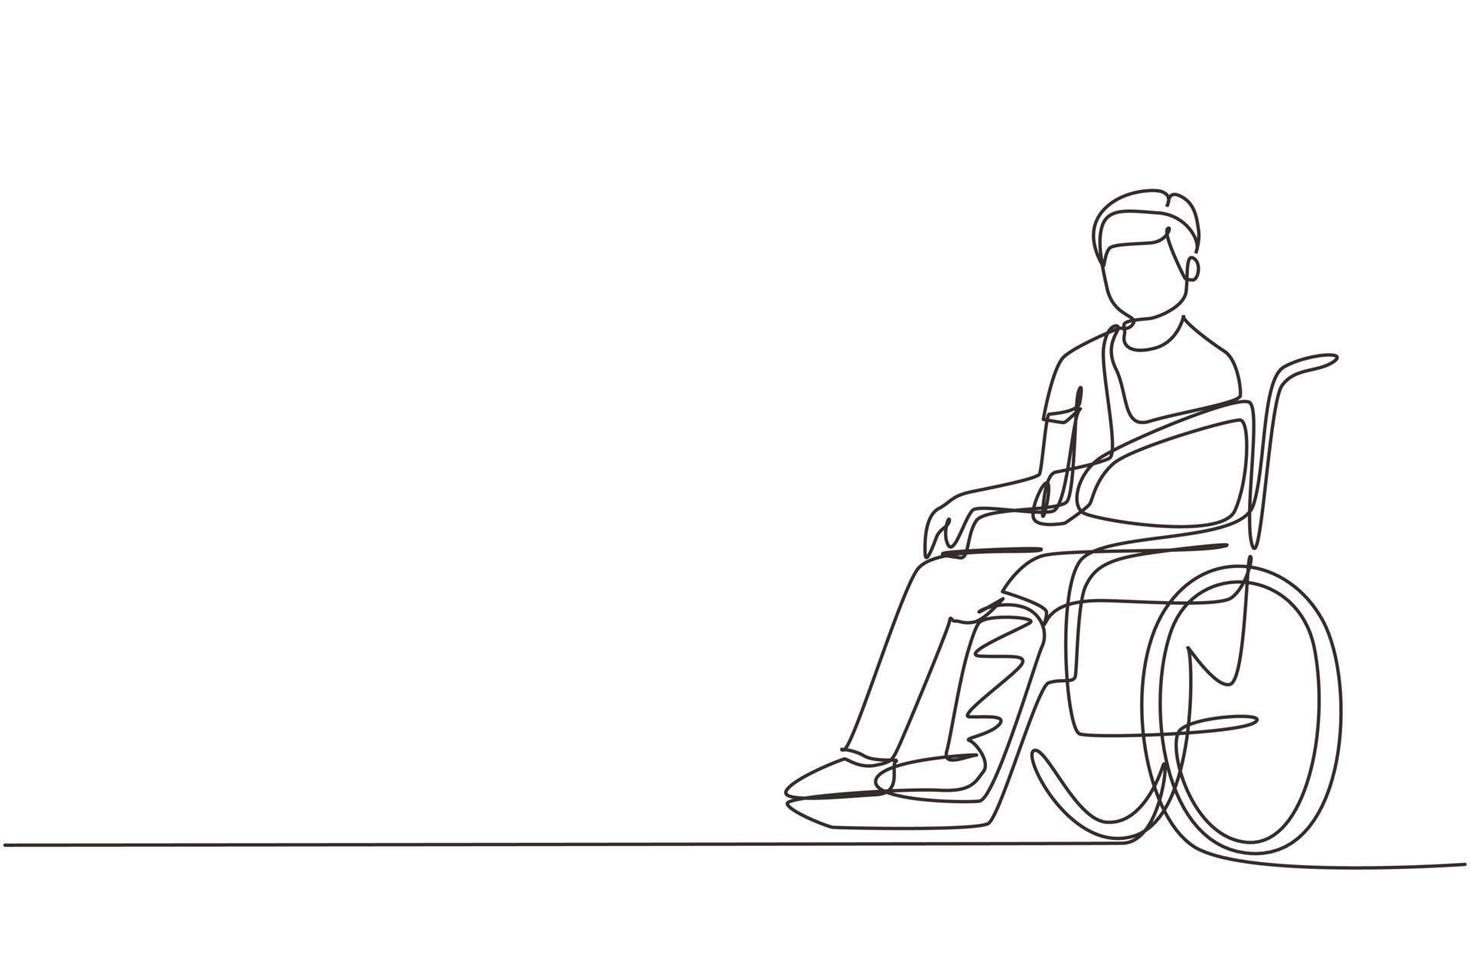 enda kontinuerlig linjeteckning sjuk man med skador, gips sitter i rullstol. skadad man sitter i rullstol med brutet ben. kille med benbrott. en rad rita design vektorillustration vektor